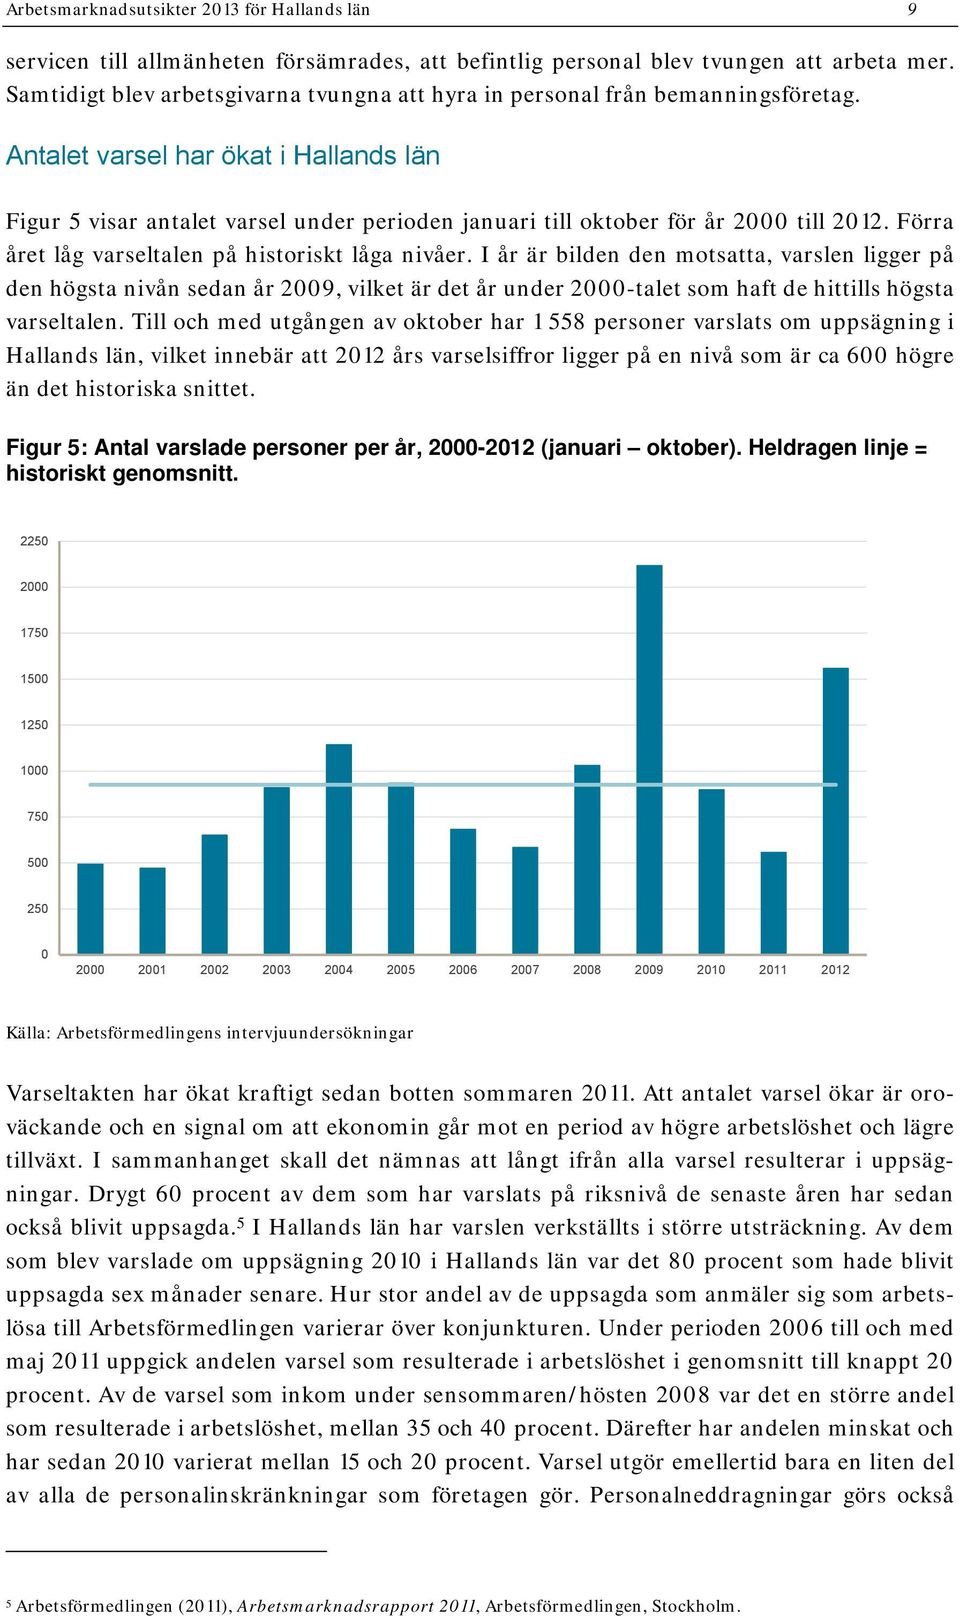 Antalet varsel har ökat i Hallands län Figur 5 visar antalet varsel under perioden januari till oktober för år 2000 till 2012. Förra året låg varseltalen på historiskt låga nivåer.